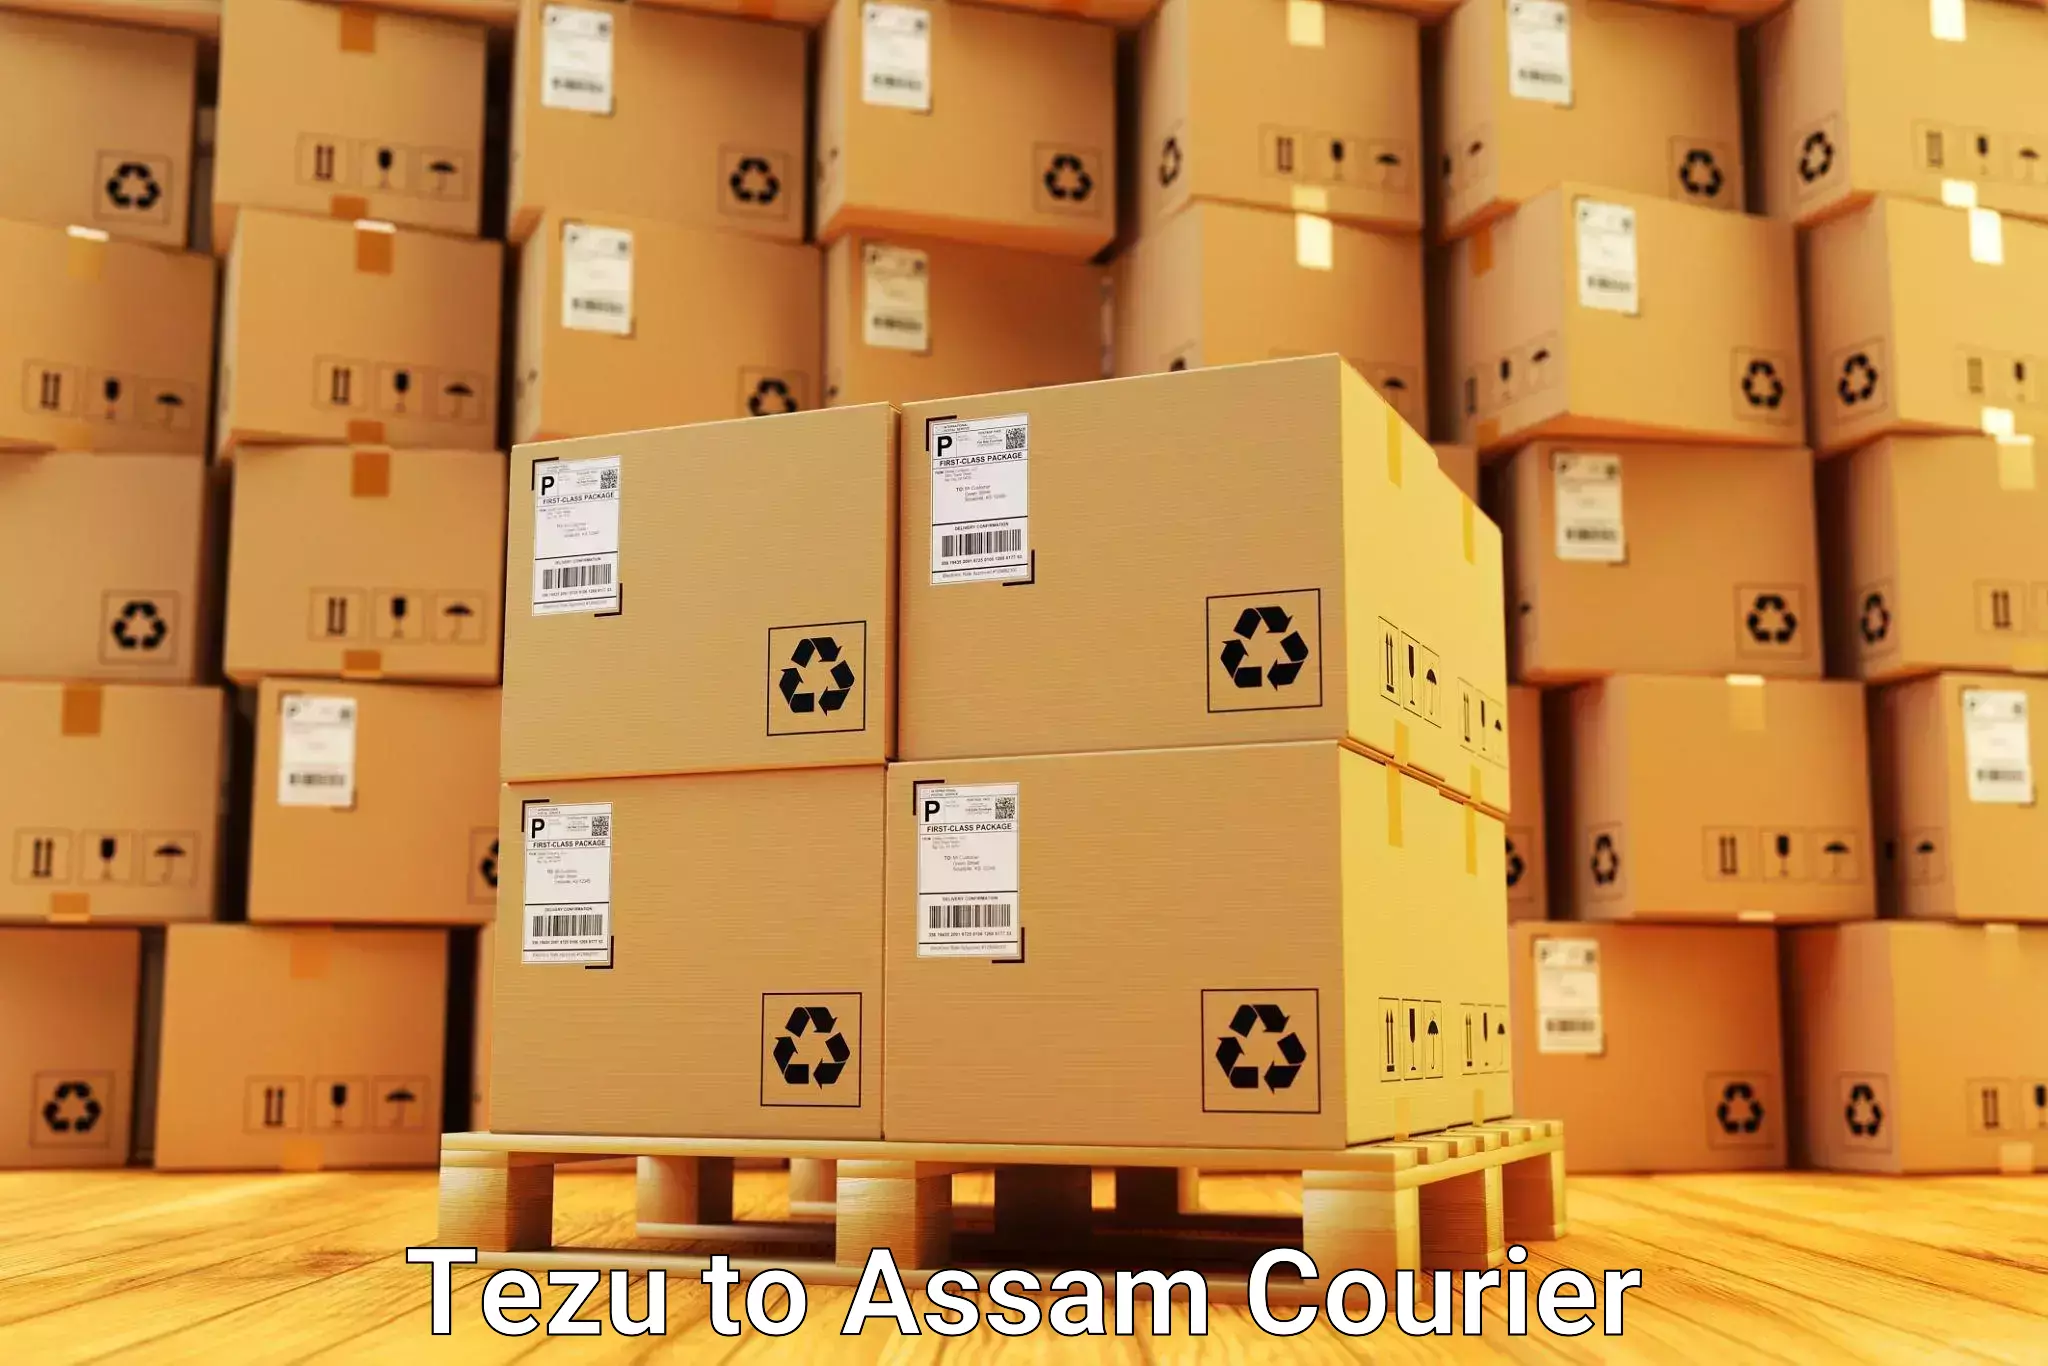 Furniture delivery service Tezu to Assam